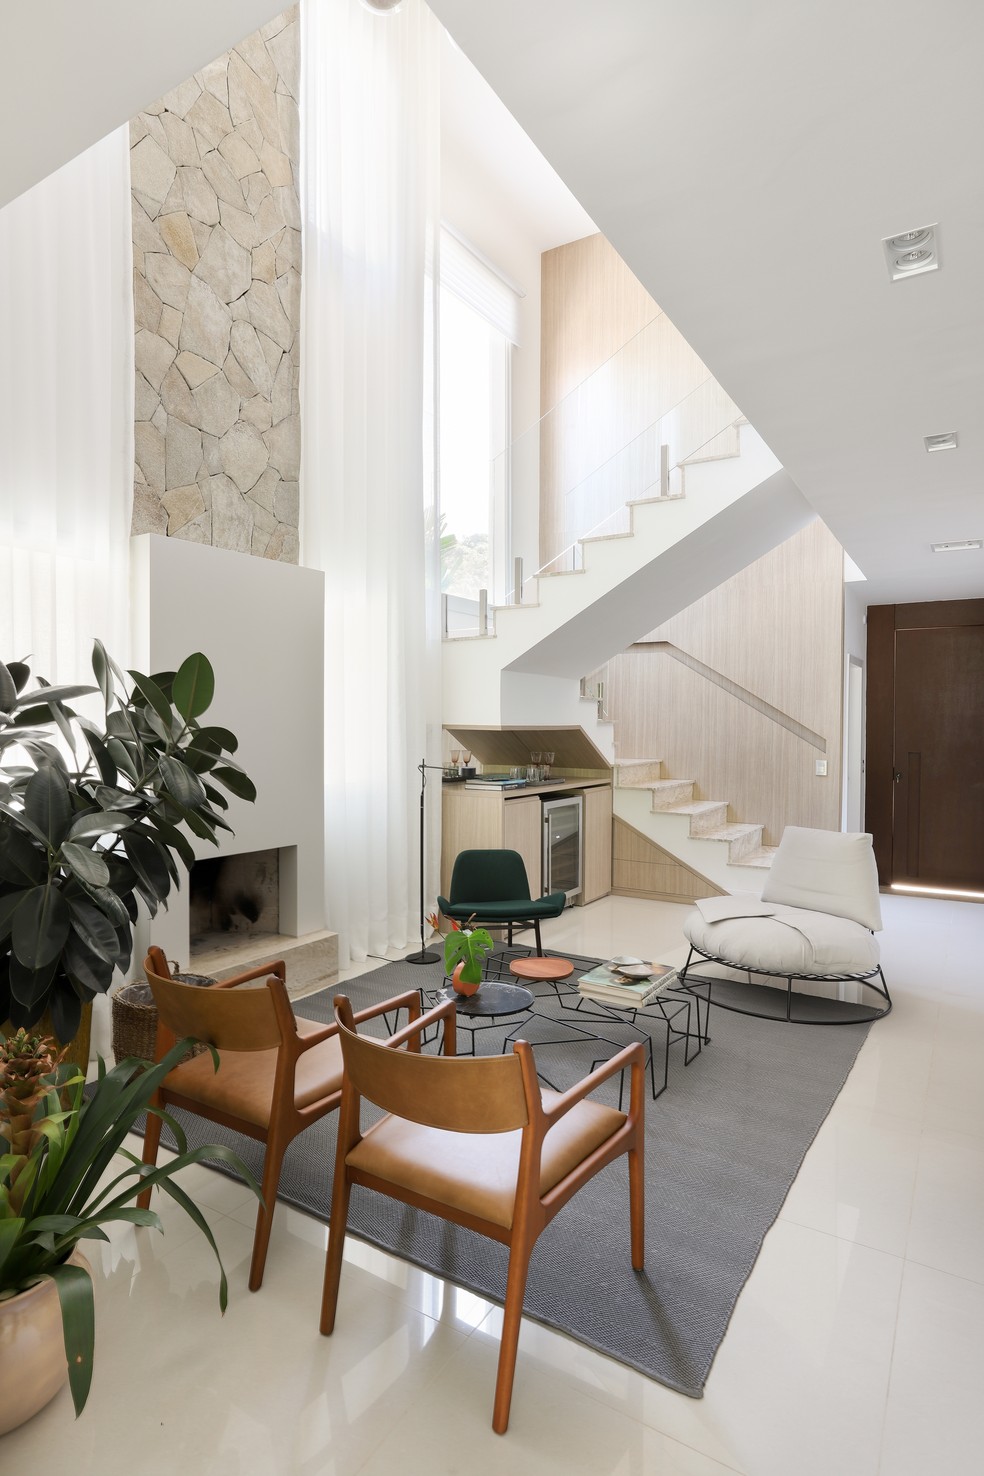 Pé-direito duplo foi uma das características da residência aproveitadas pelo escritório de arquitetura — Foto: Mariana Orsi